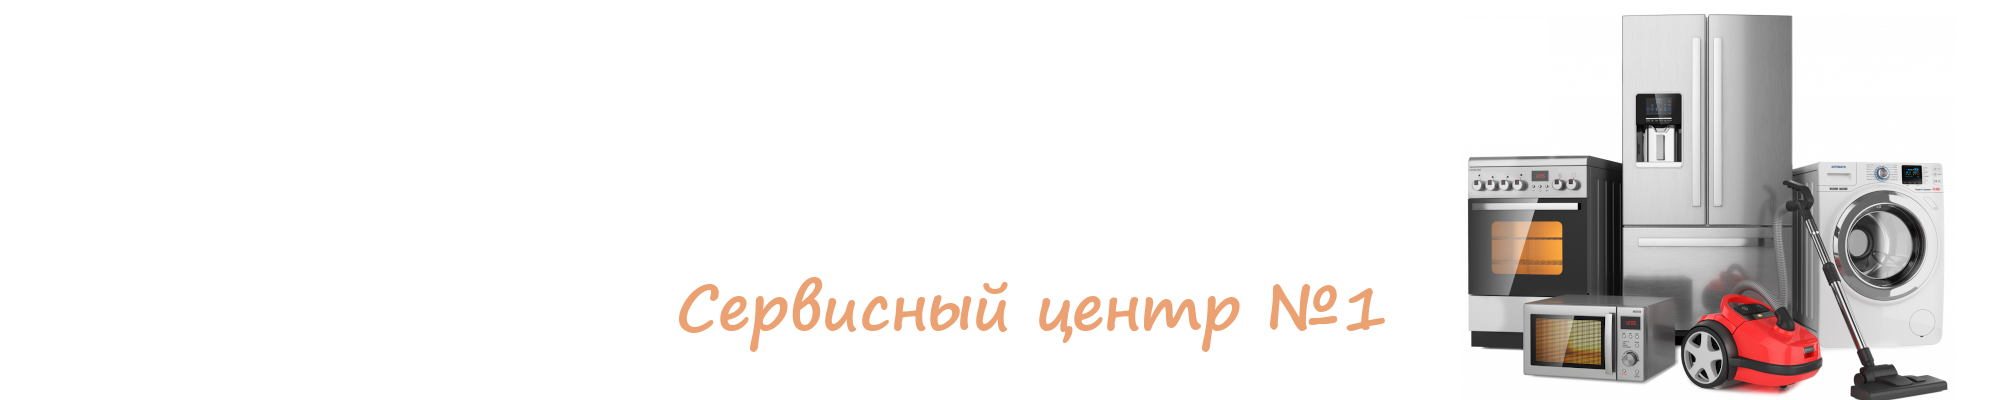 remont_bitovoi_texniki Ремонт бытовой техники в Витебске